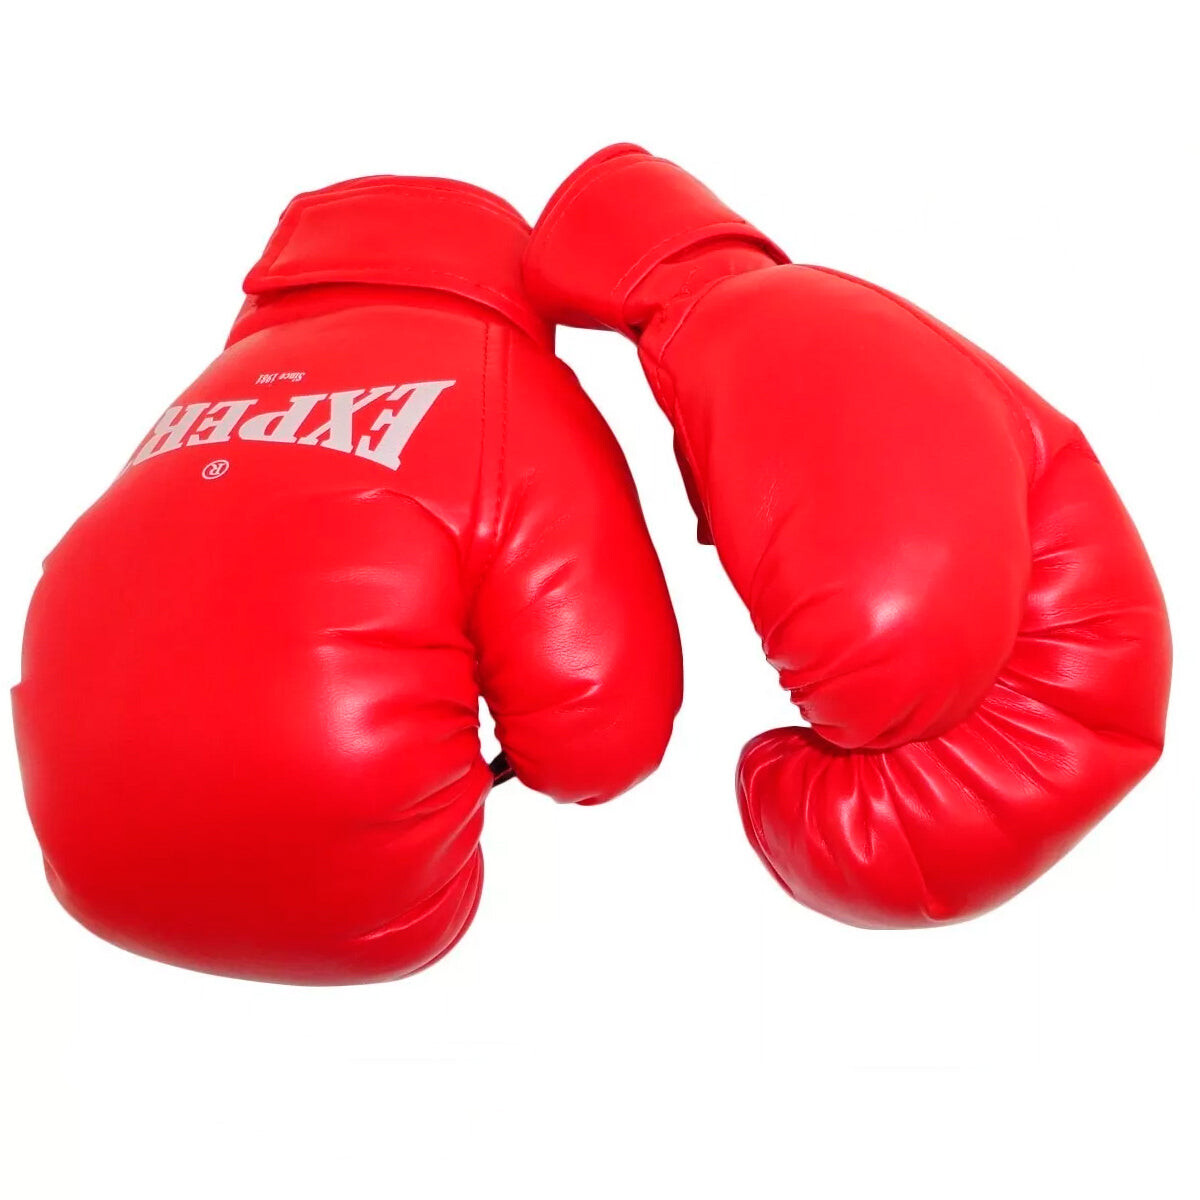 Guante De Boxeo Excelente Calidad Vendas Bolsas N1 - Rojo 